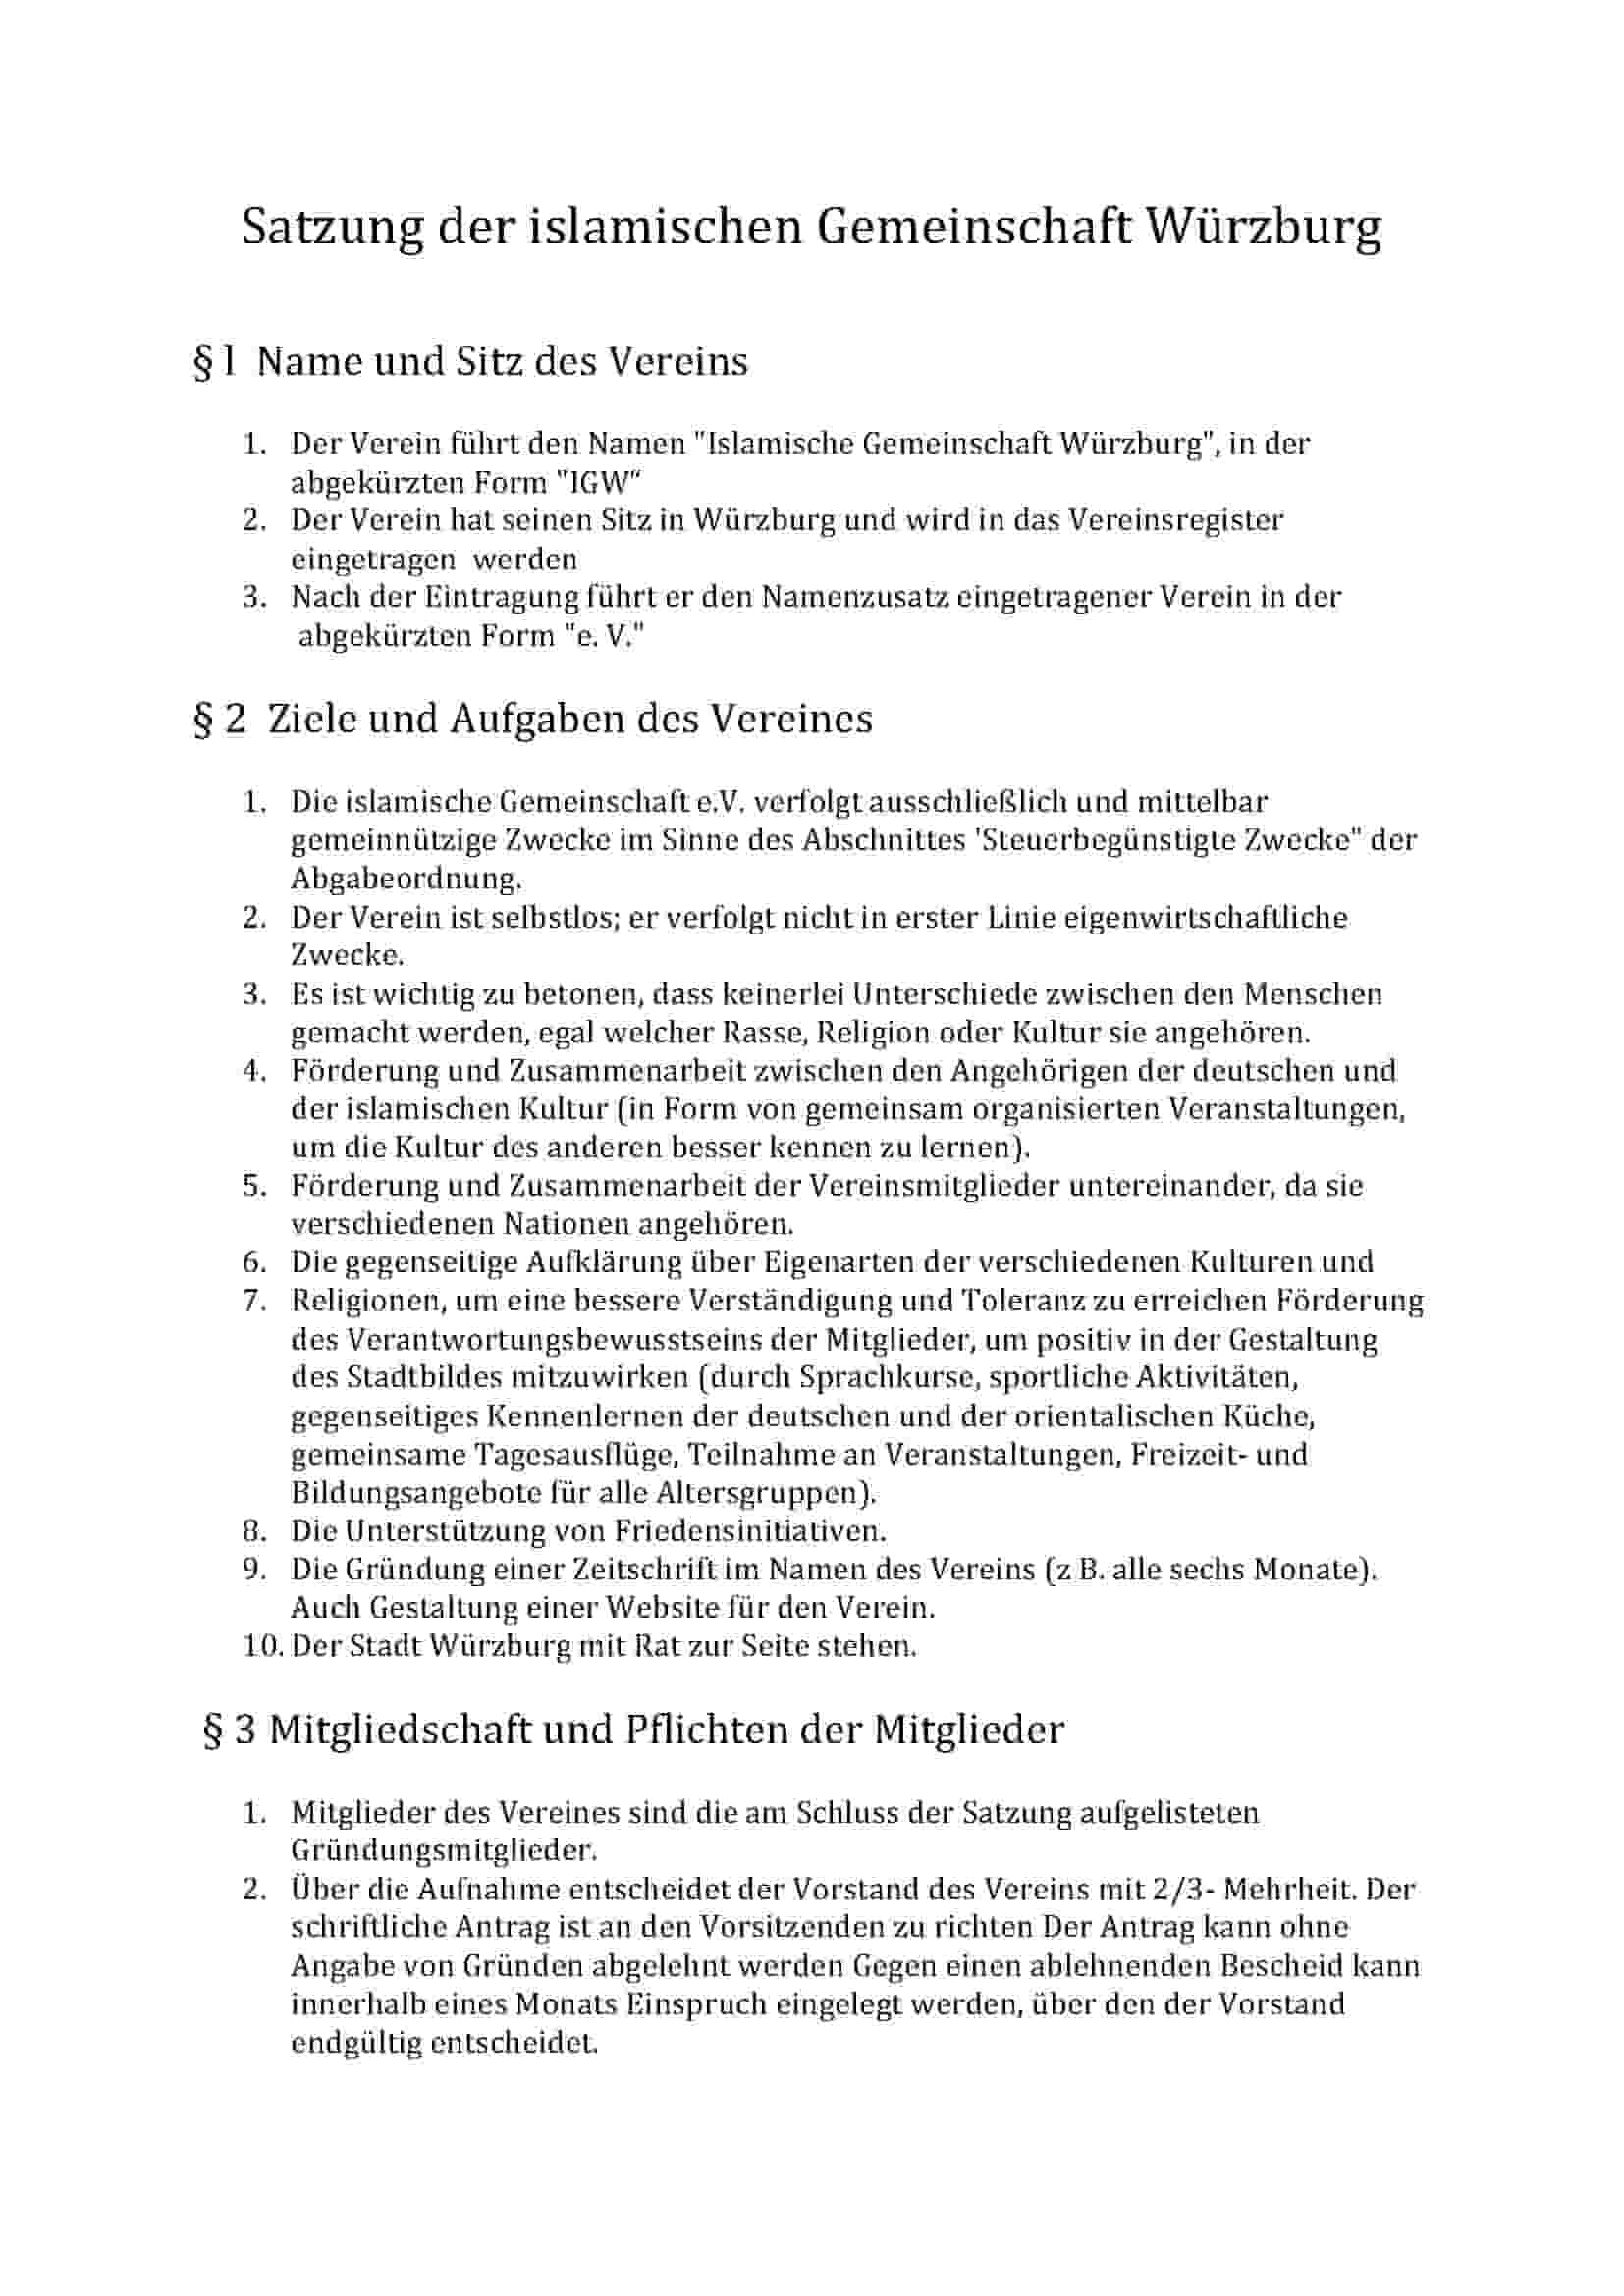 Satzung-der-islamischen-Gemeinschaft-Wuerzburg.jpg